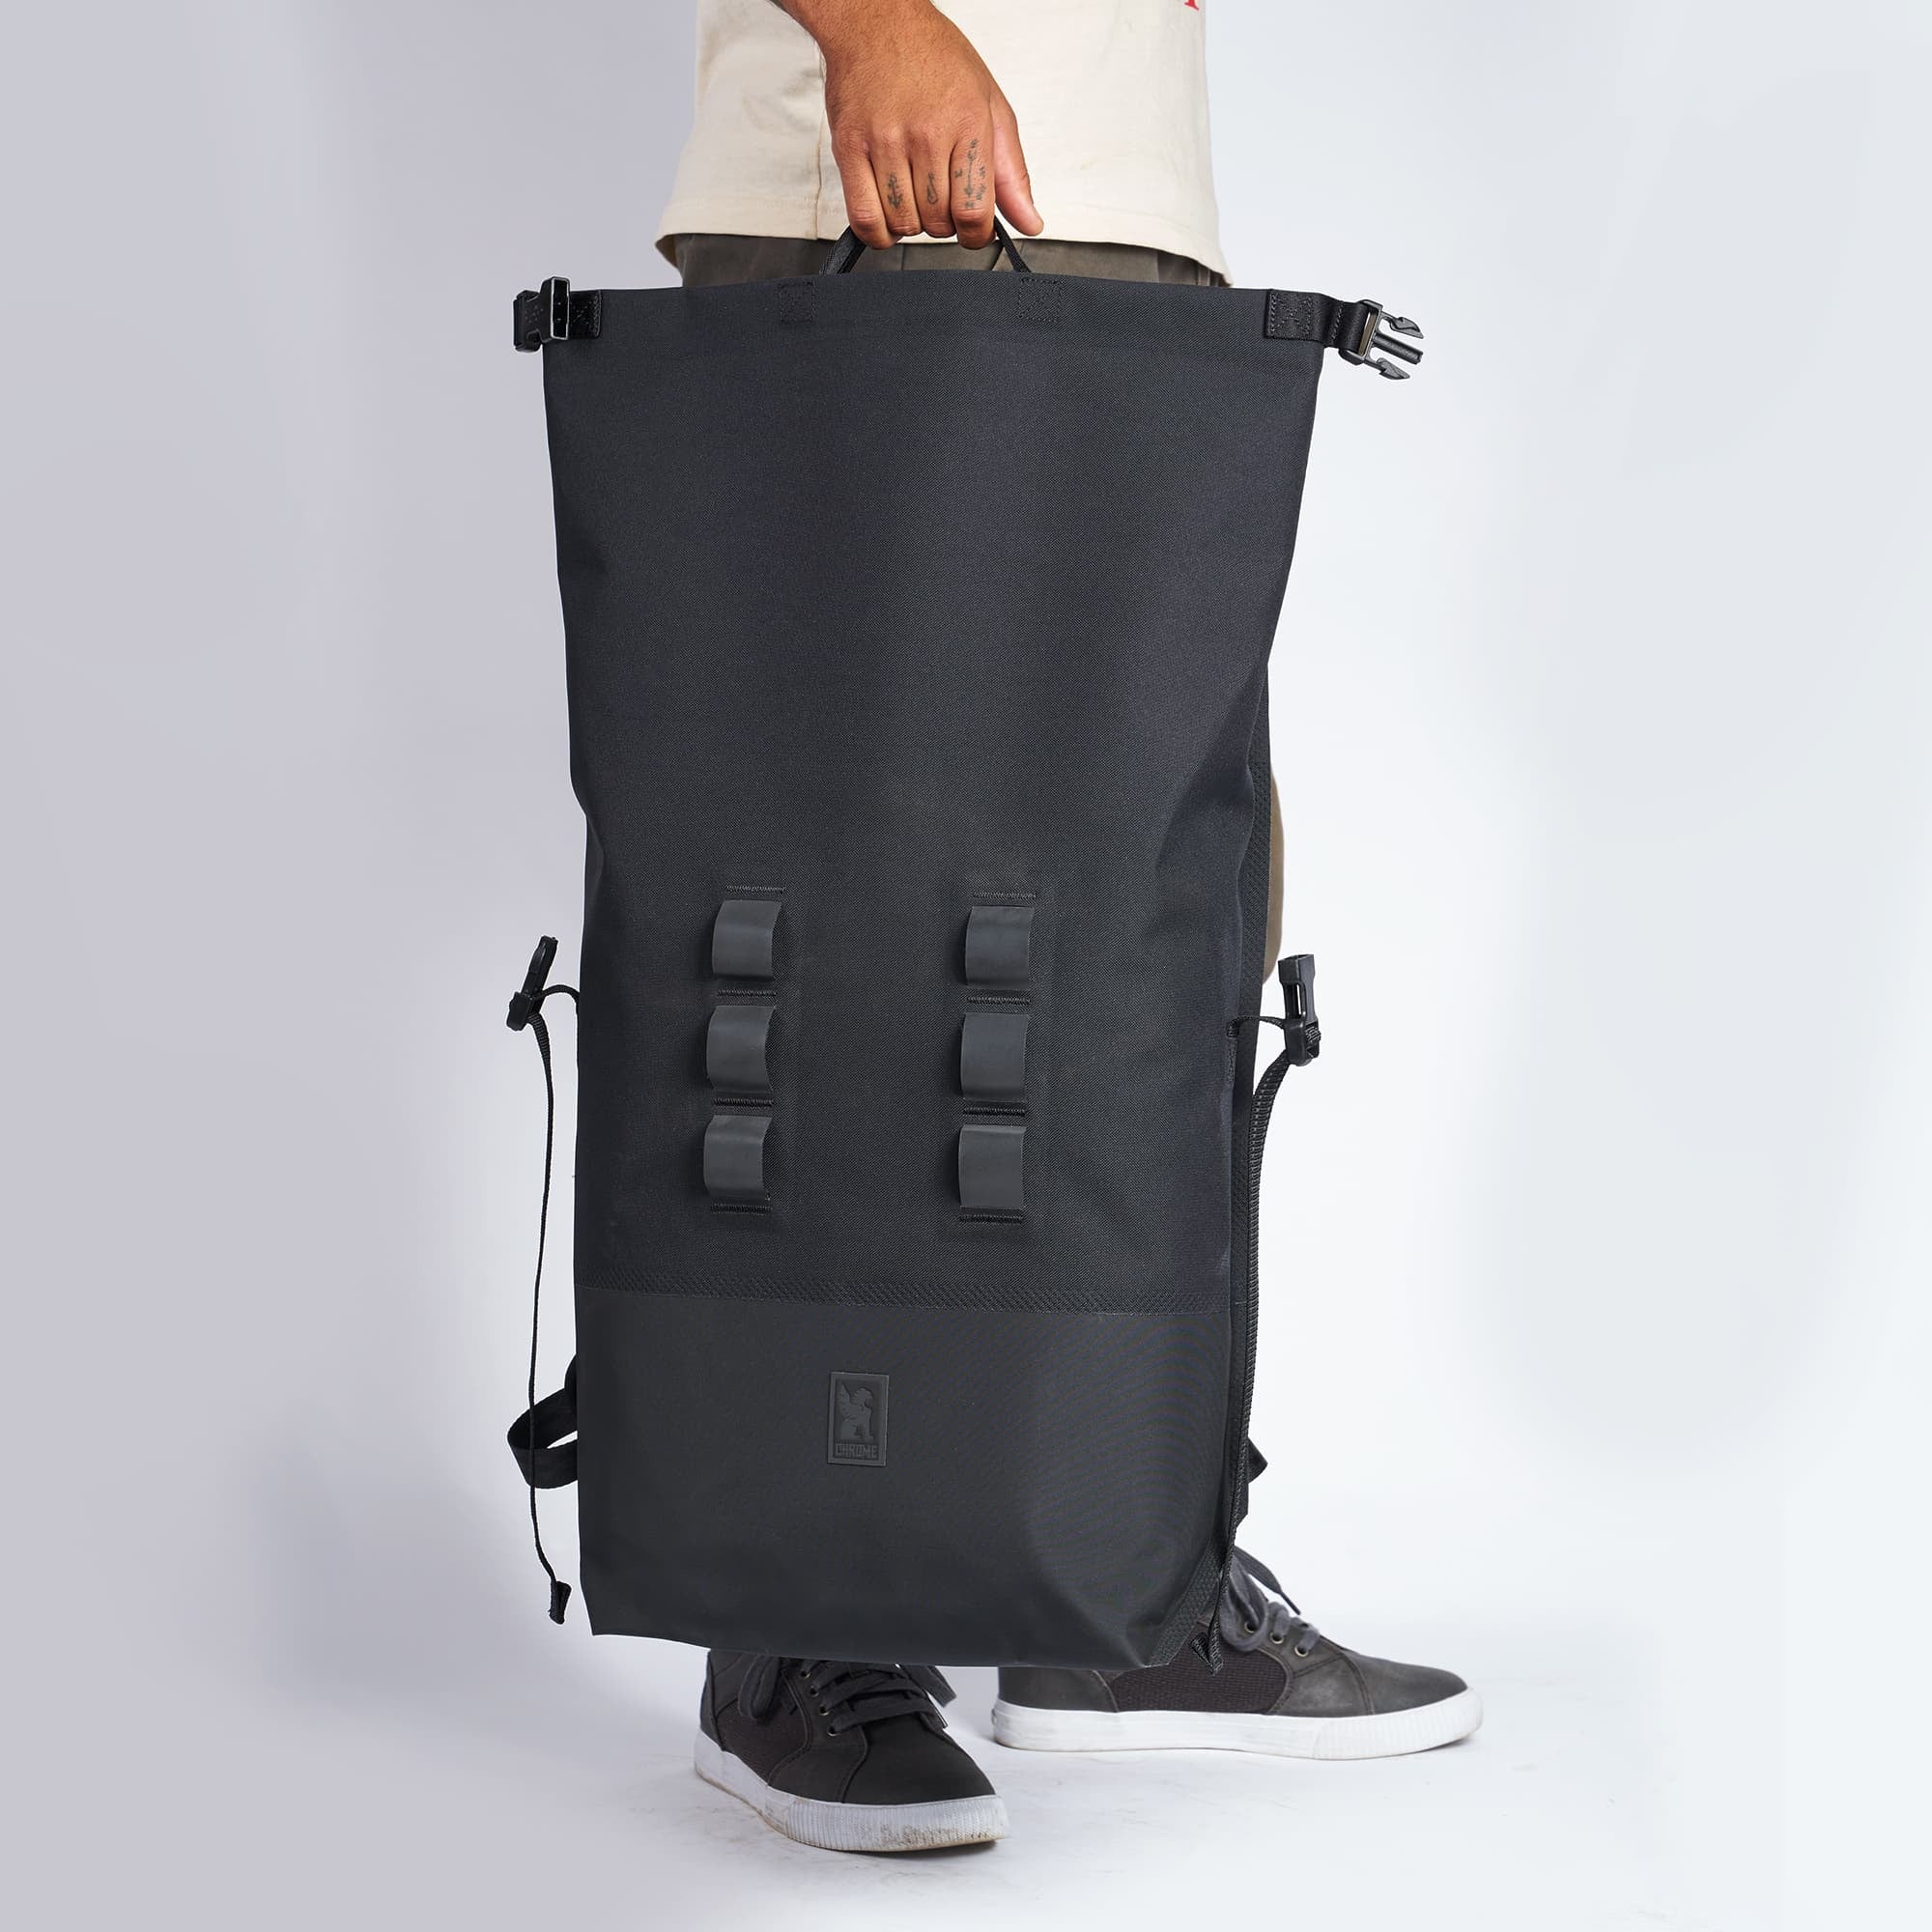 Waterproof 30L rolltop backpack in black carry handles #color_black